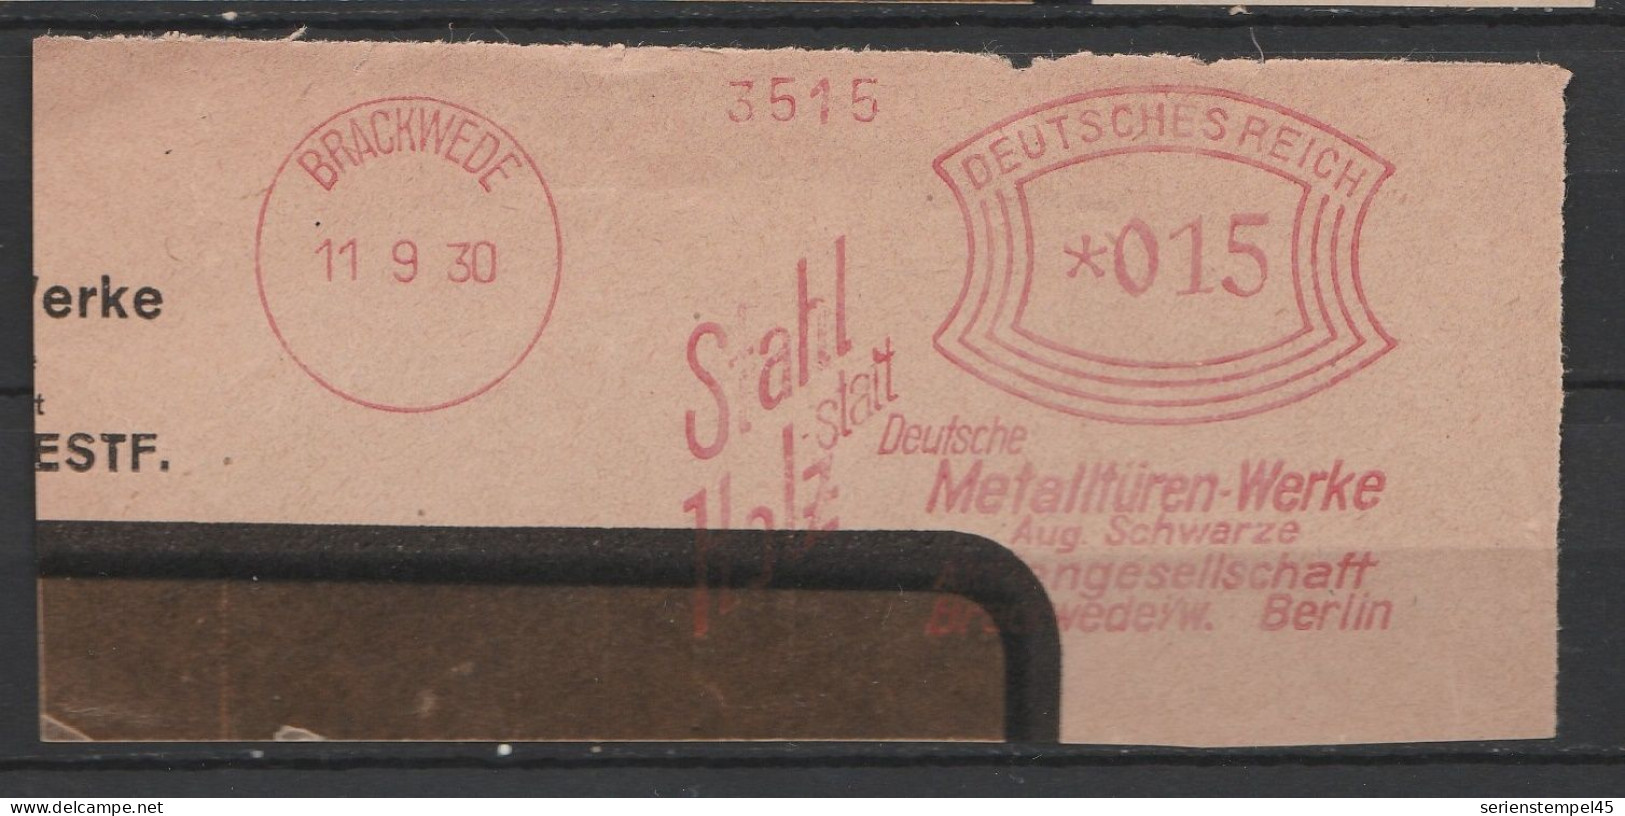 Deutsches Reich Briefstück Mit Freistempel Brackewede 1930 Deutsche Metalltüren Werke Aug. Schwarze - Franking Machines